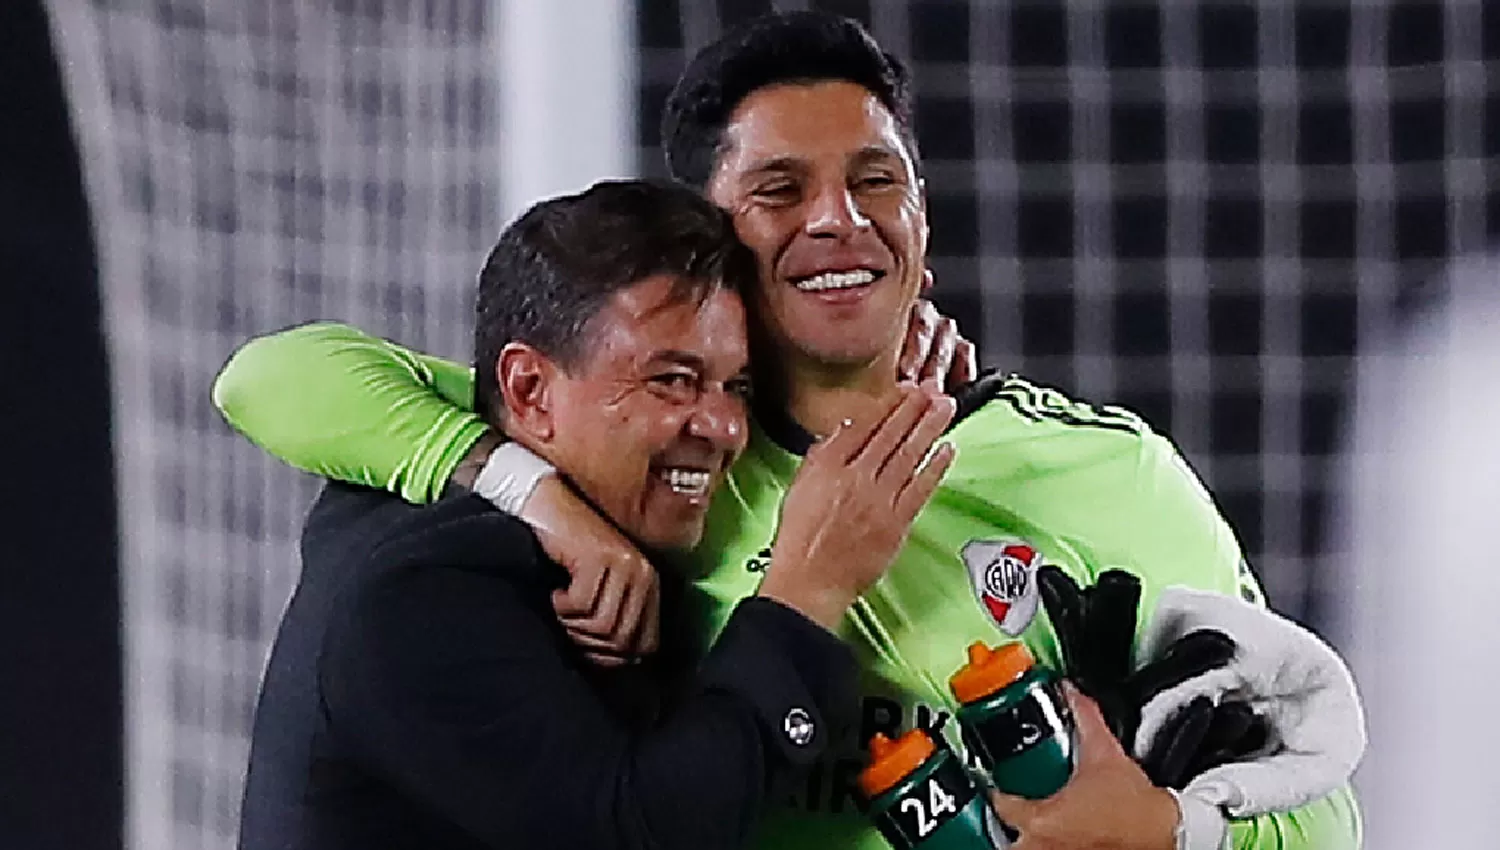 FELICES. Gallardo felicitó a Pérez al final del partido, después de la victoria de River sobre Independiente SF.